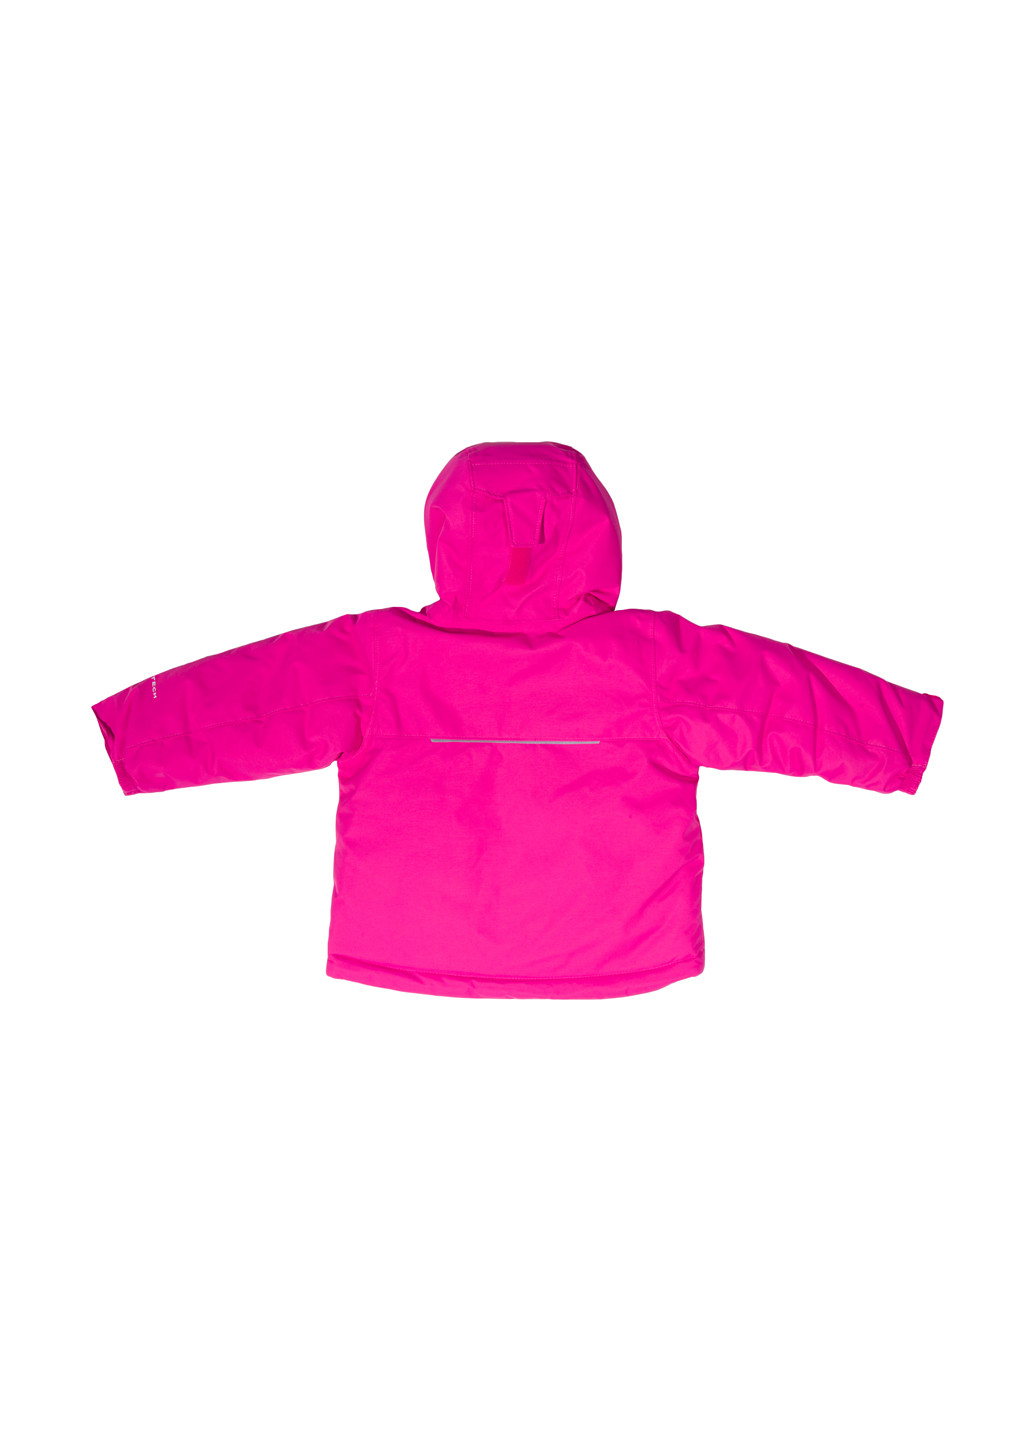 Рожевий зимній комплект (куртка, комбінезон) Columbia